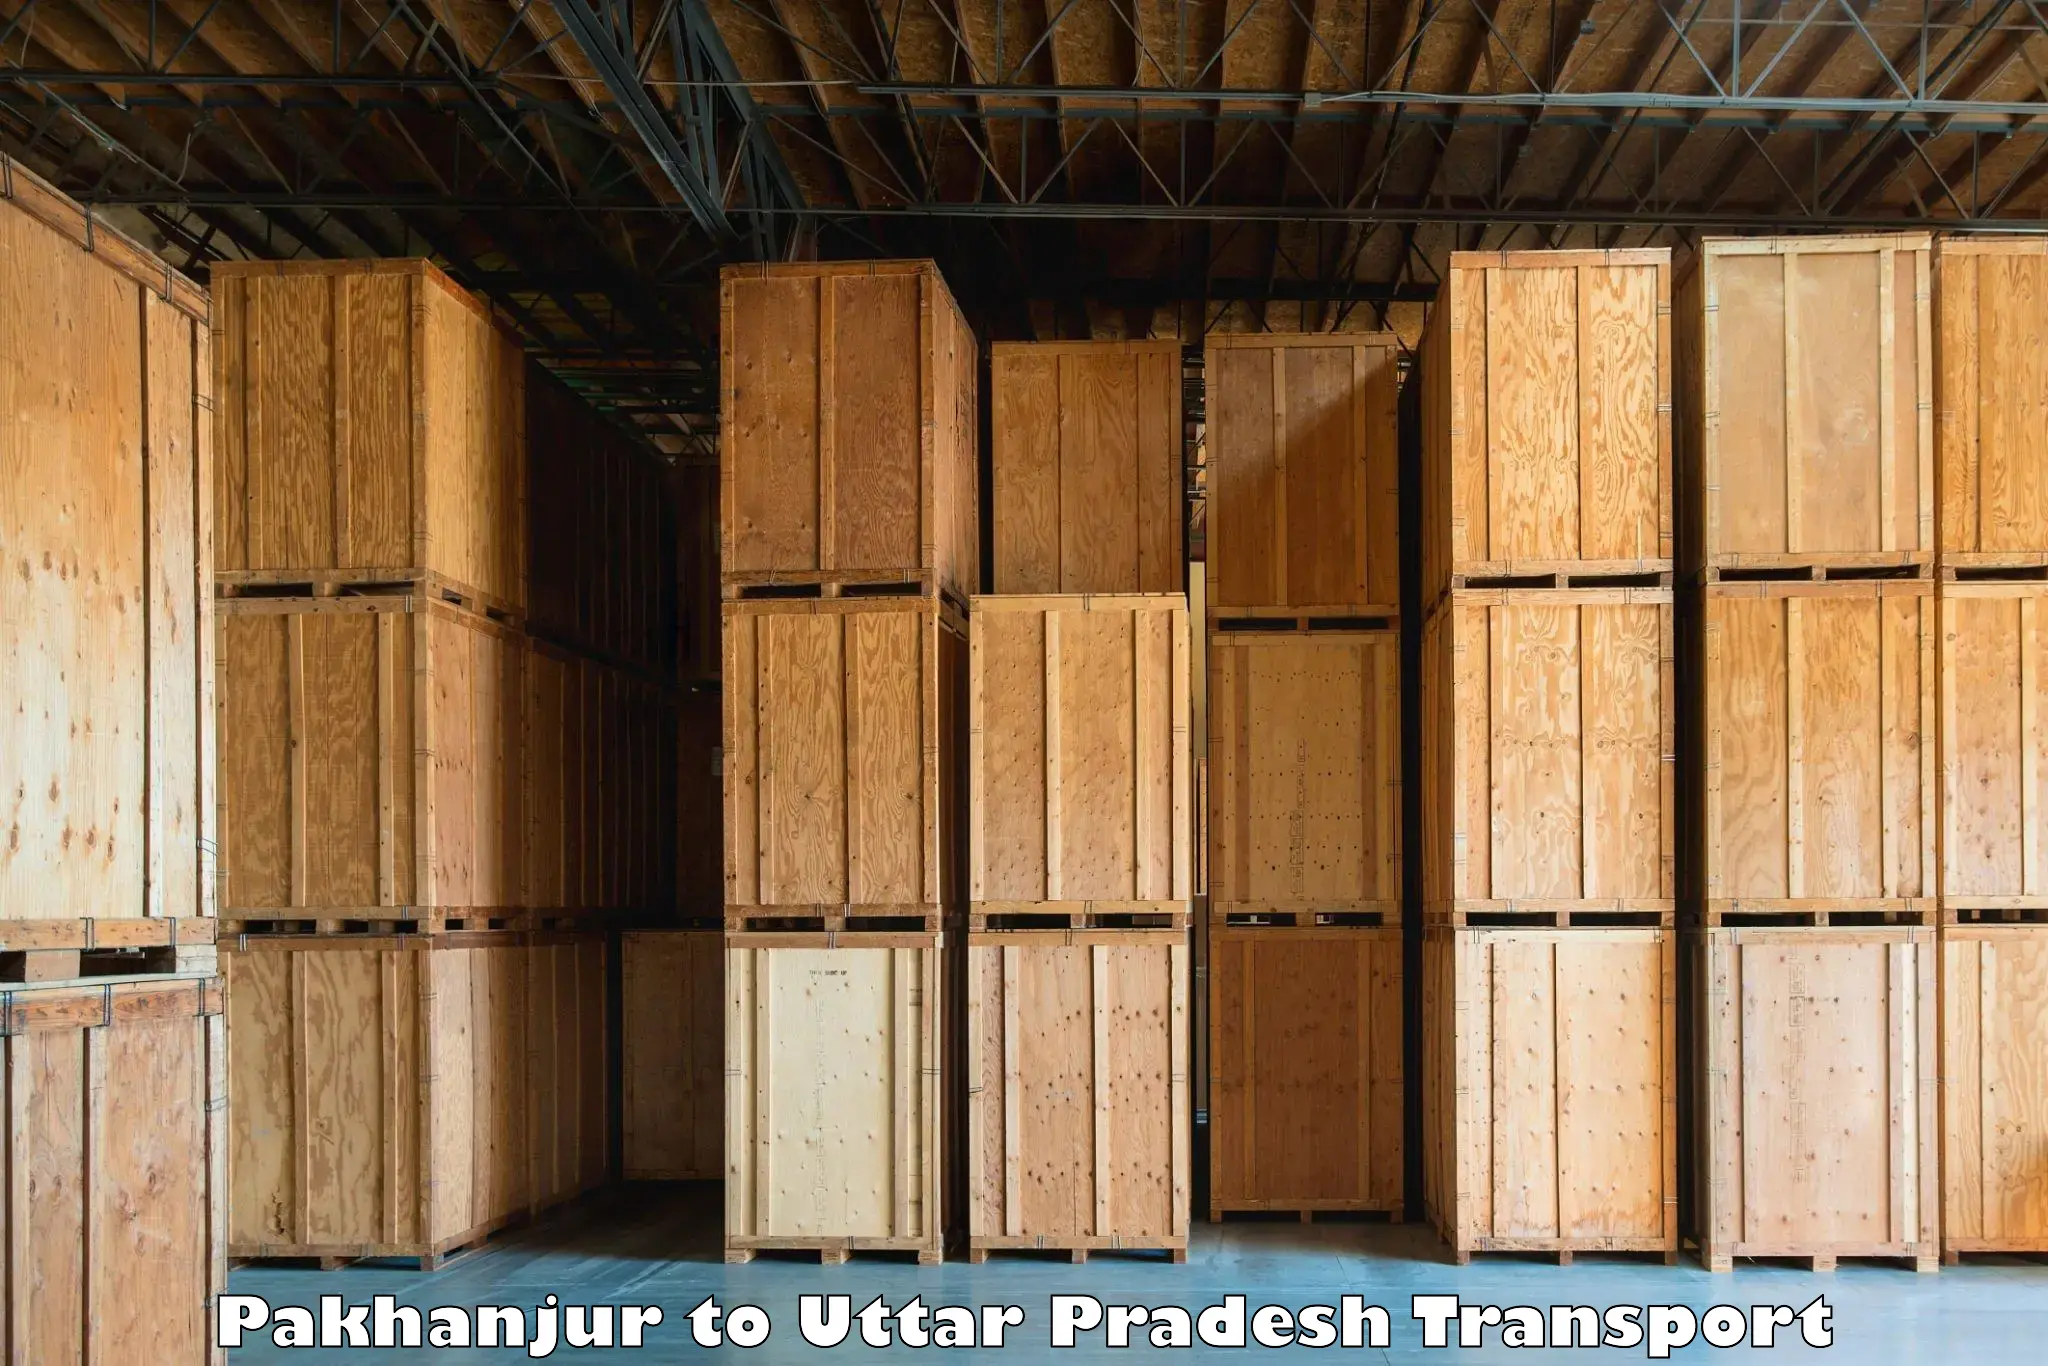 Intercity goods transport in Pakhanjur to Kulpahar